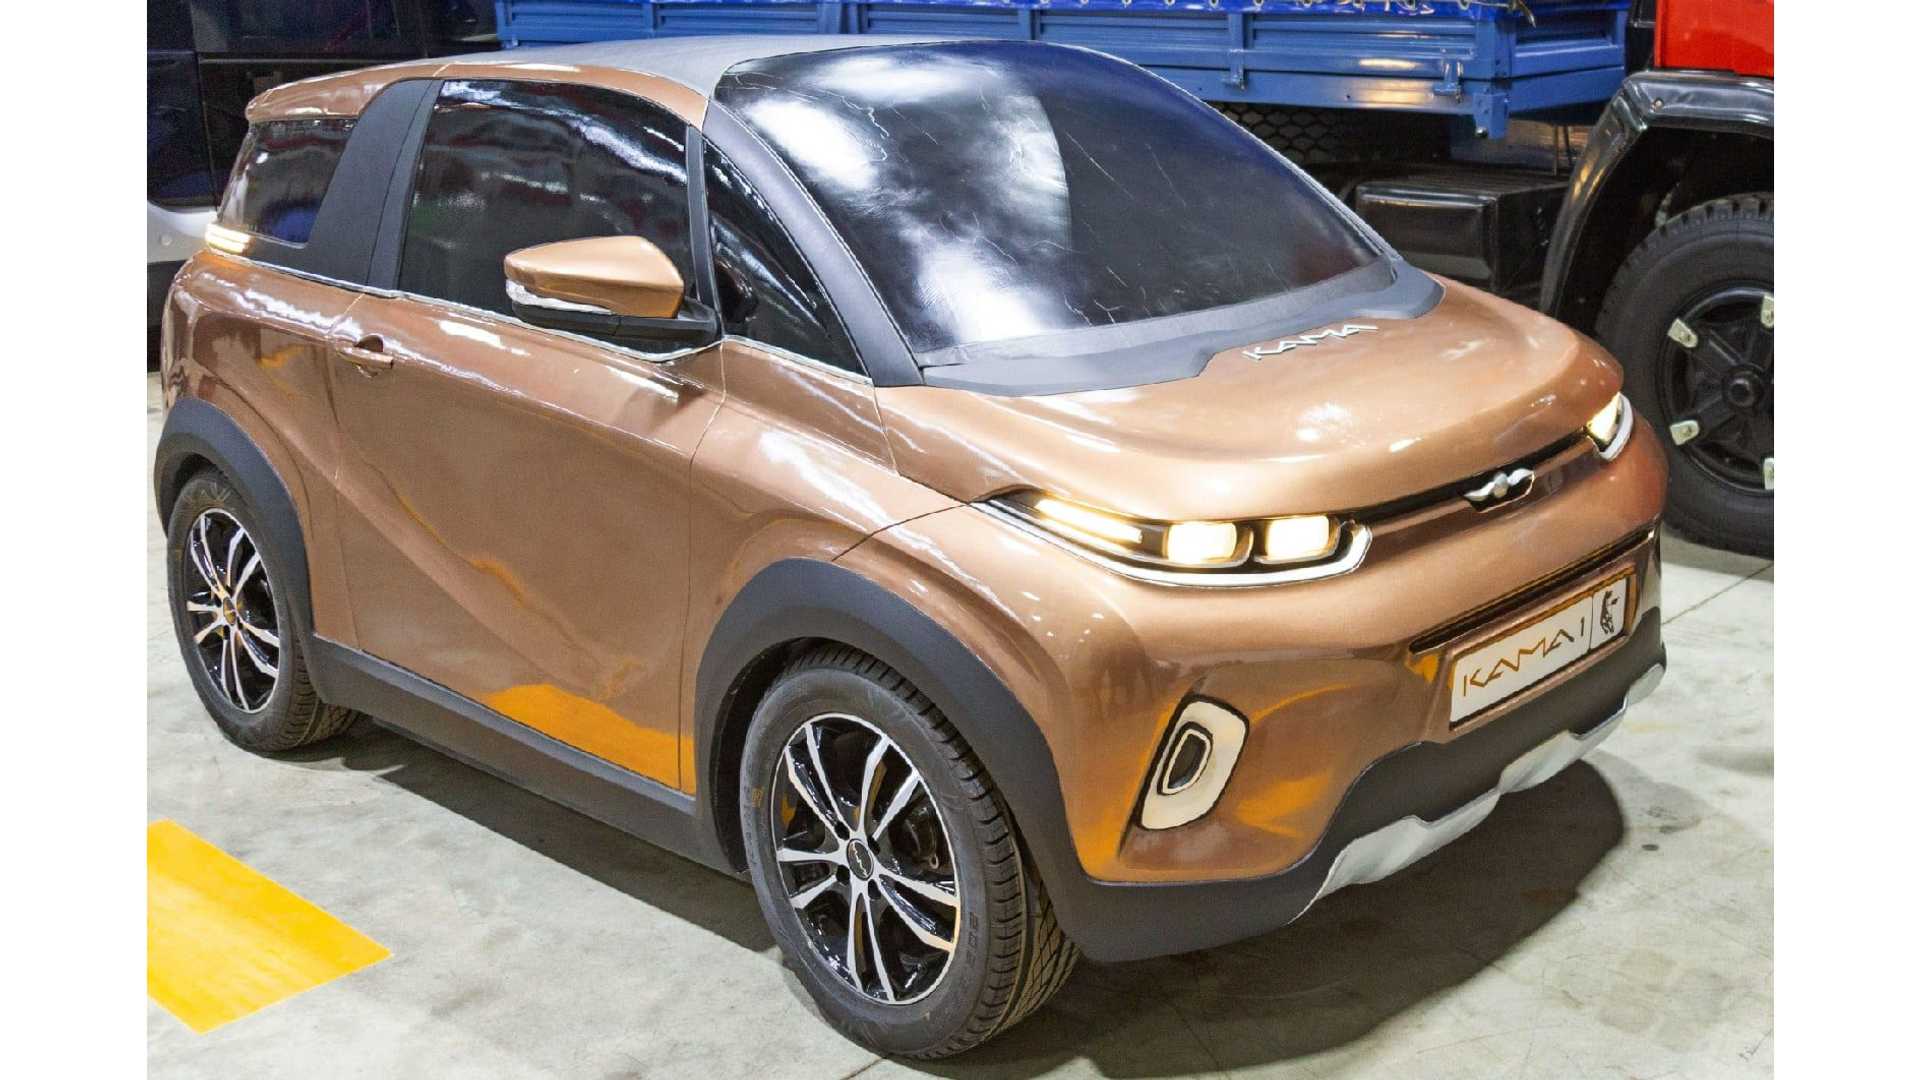 КамАЗ подтвердил слухи о создании легкового электромобиля